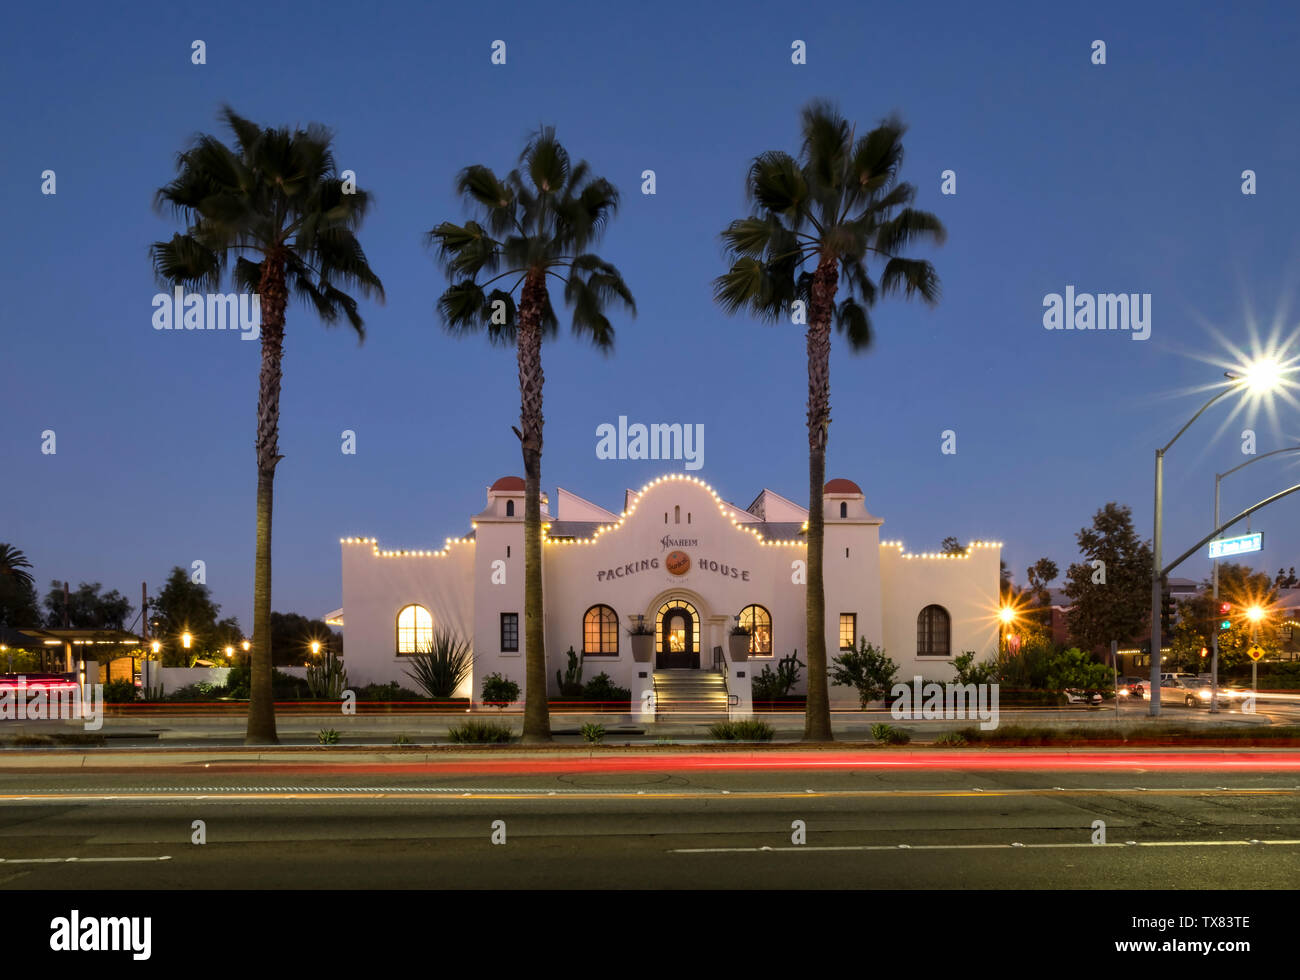 L'emballage de nuit, Anaheim, Los Angeles, Californie, USA Banque D'Images